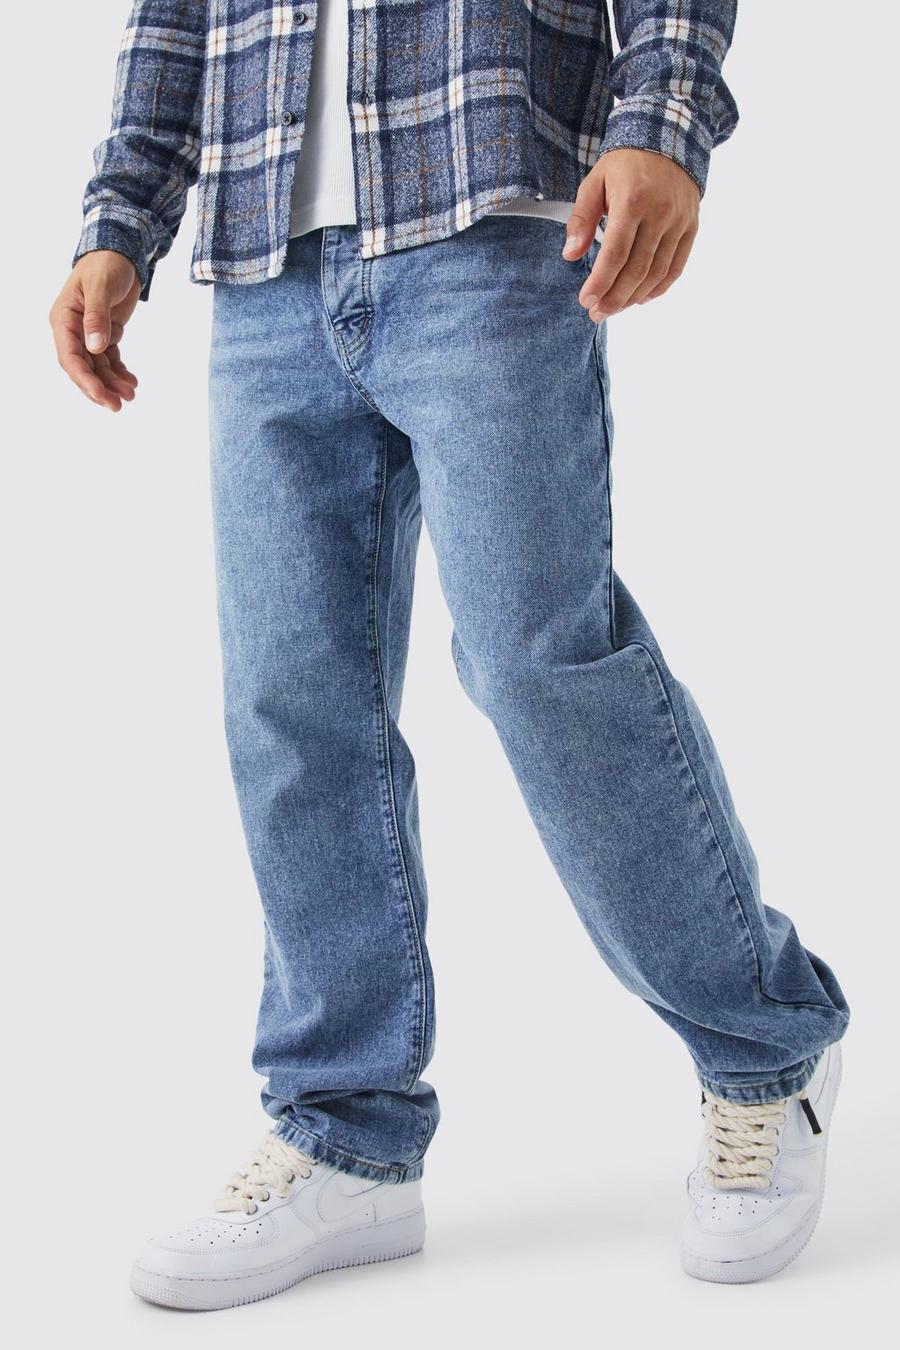 כחול בהיר ג'ינס קשיח בגזרה משוחררת